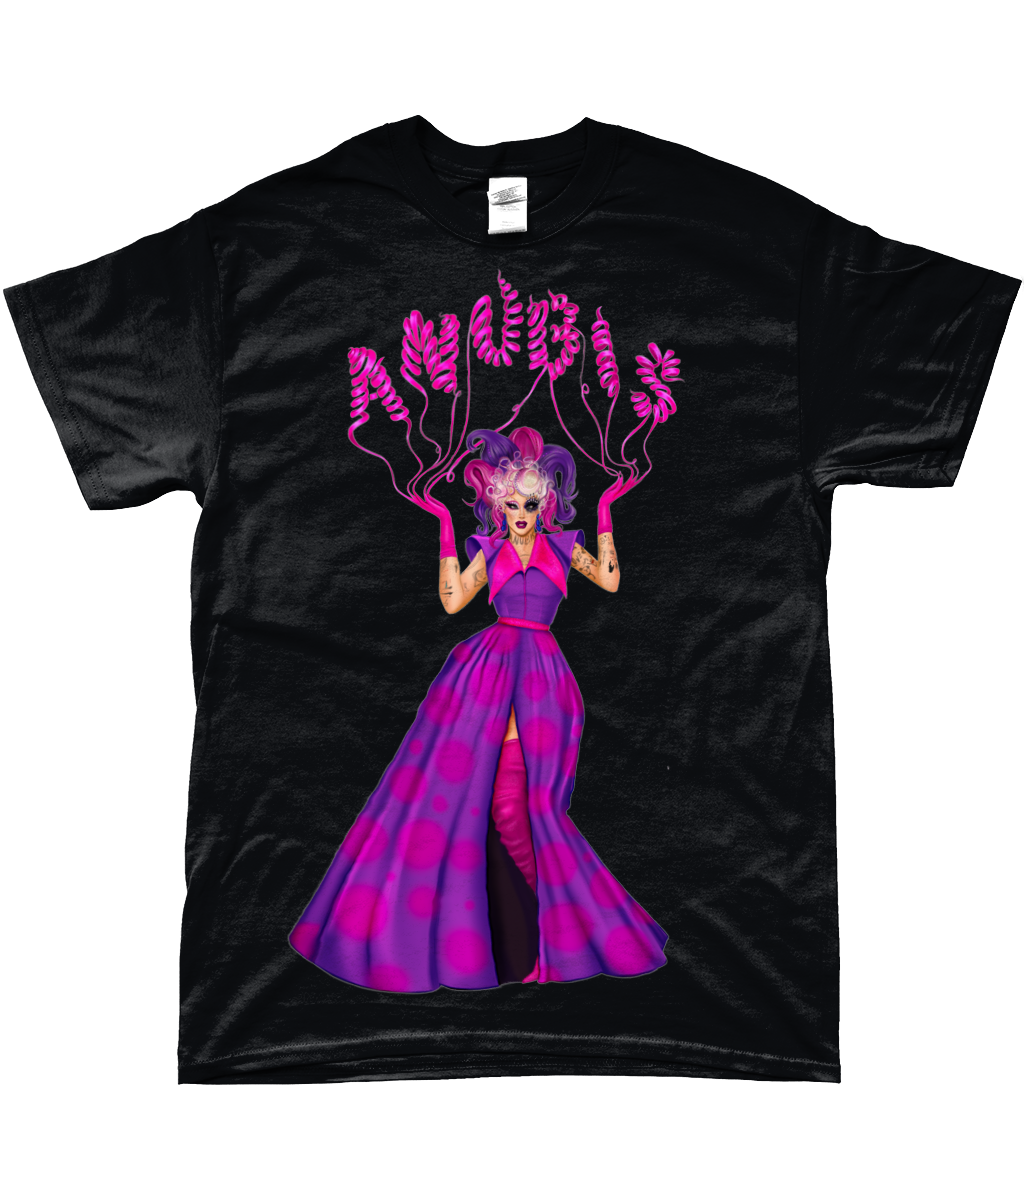 Anubis - Meet The Queens T-Shirt